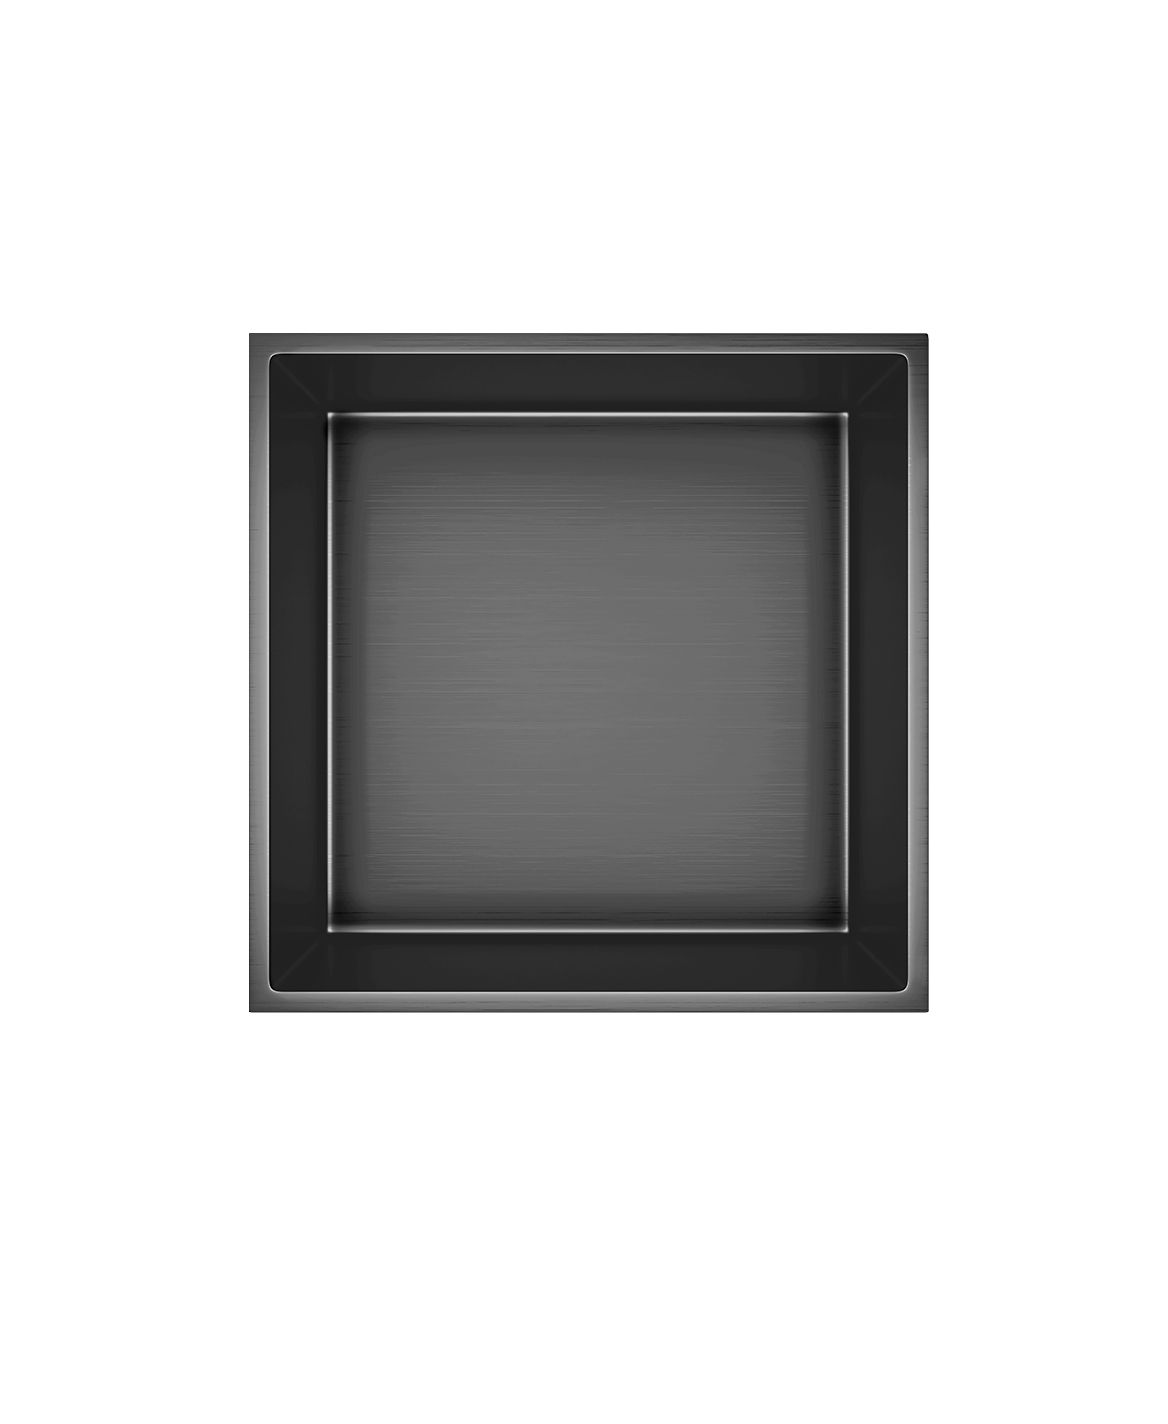 Wandnische Edelstahl grau gebürstet rostfrei 305x305x100mm - Grau - Aloni